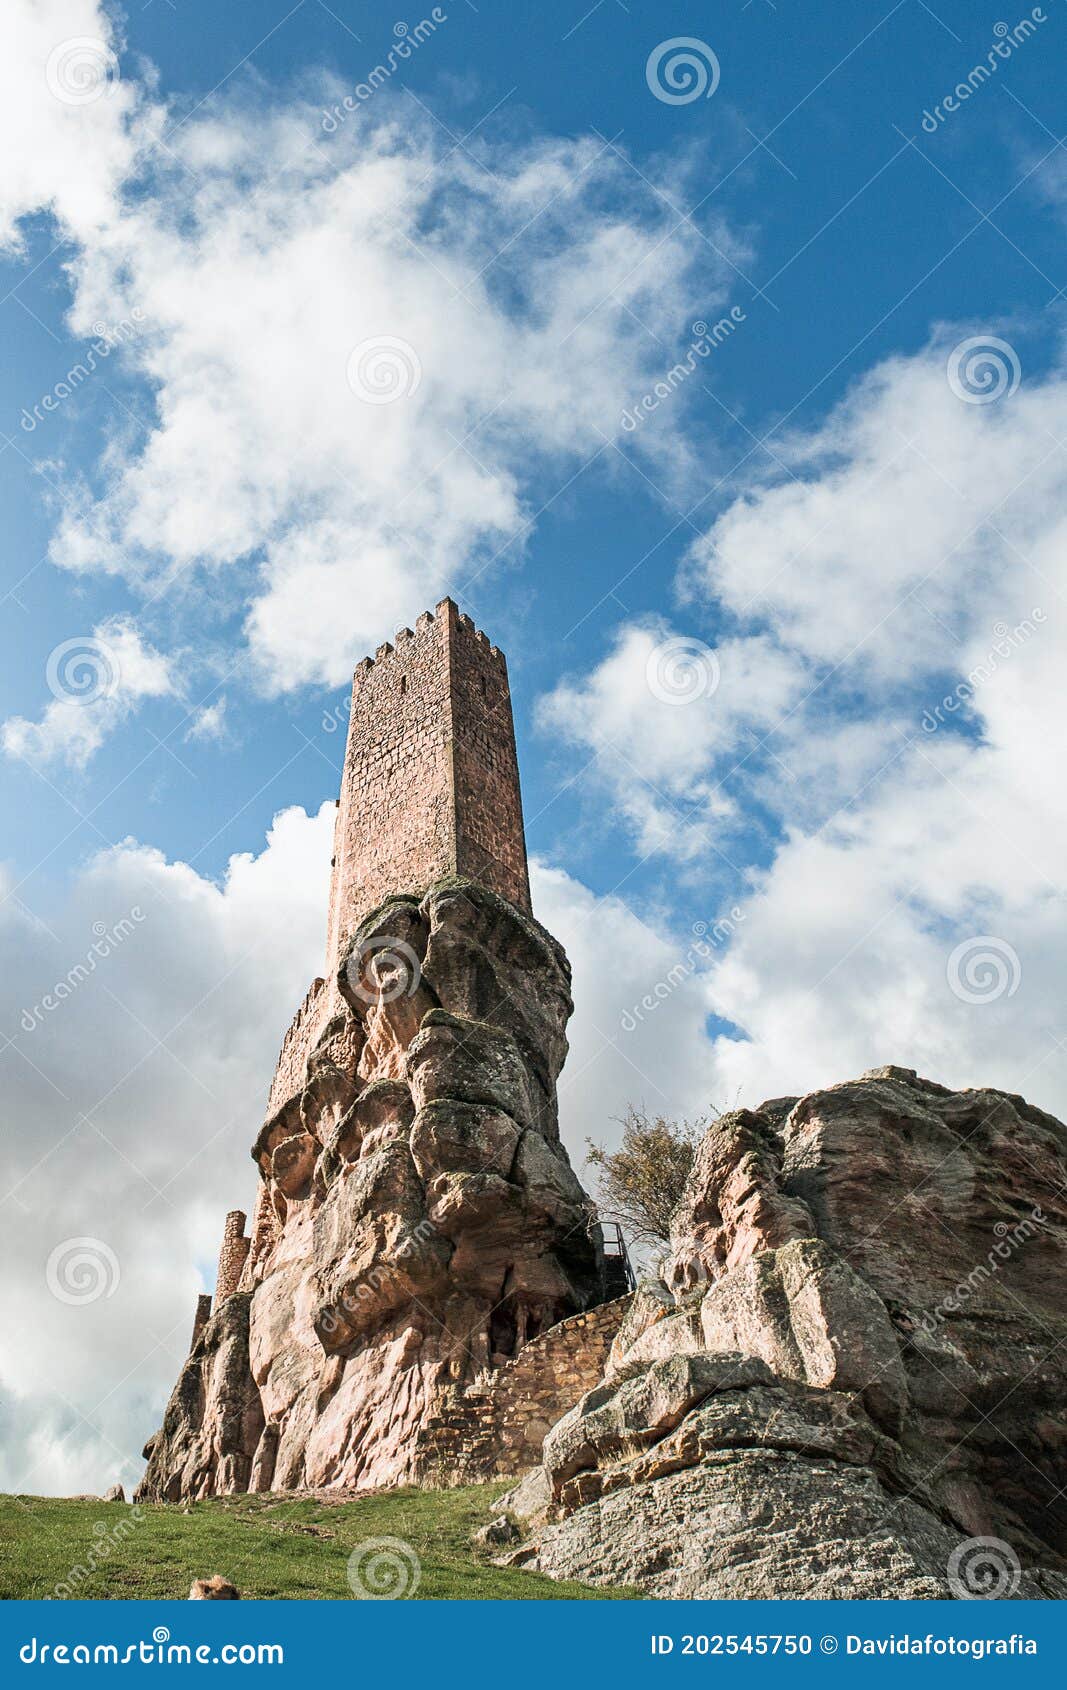 castle of zafra in the province of guadalajara